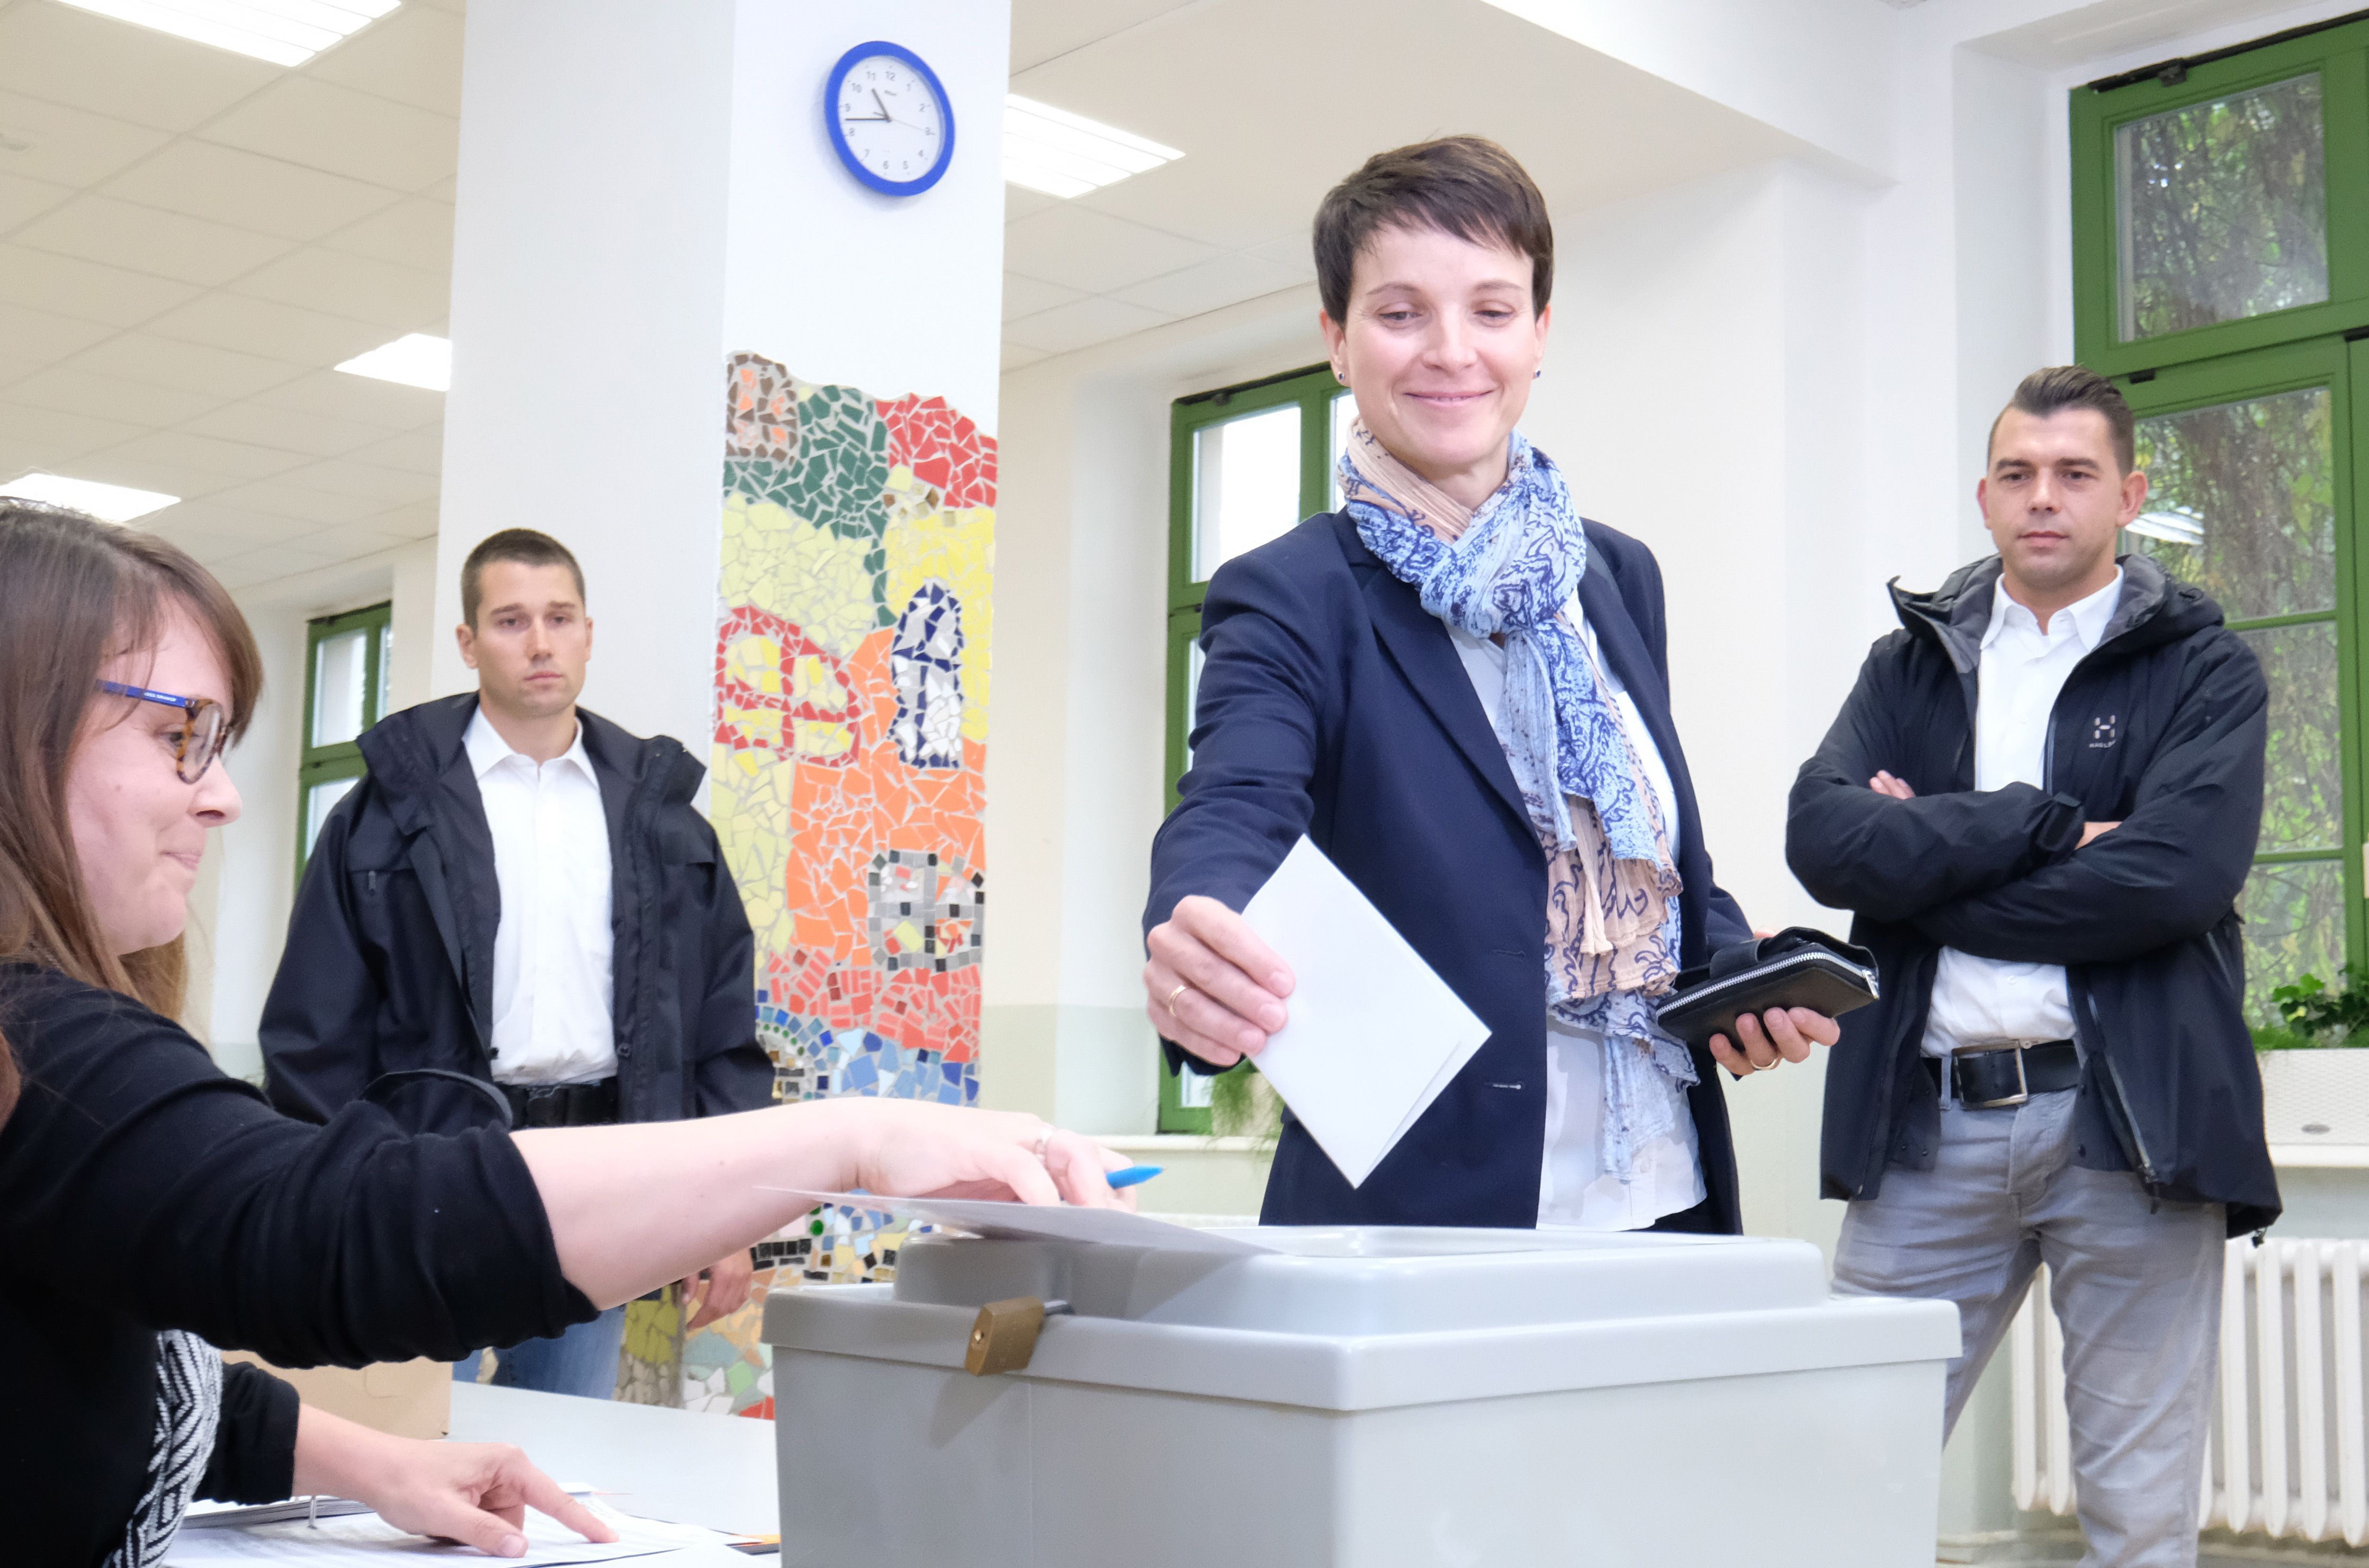 زعيمة حزب اليسار الألمانى تضع ورقة الاقتراع بصندوق الانتخابات